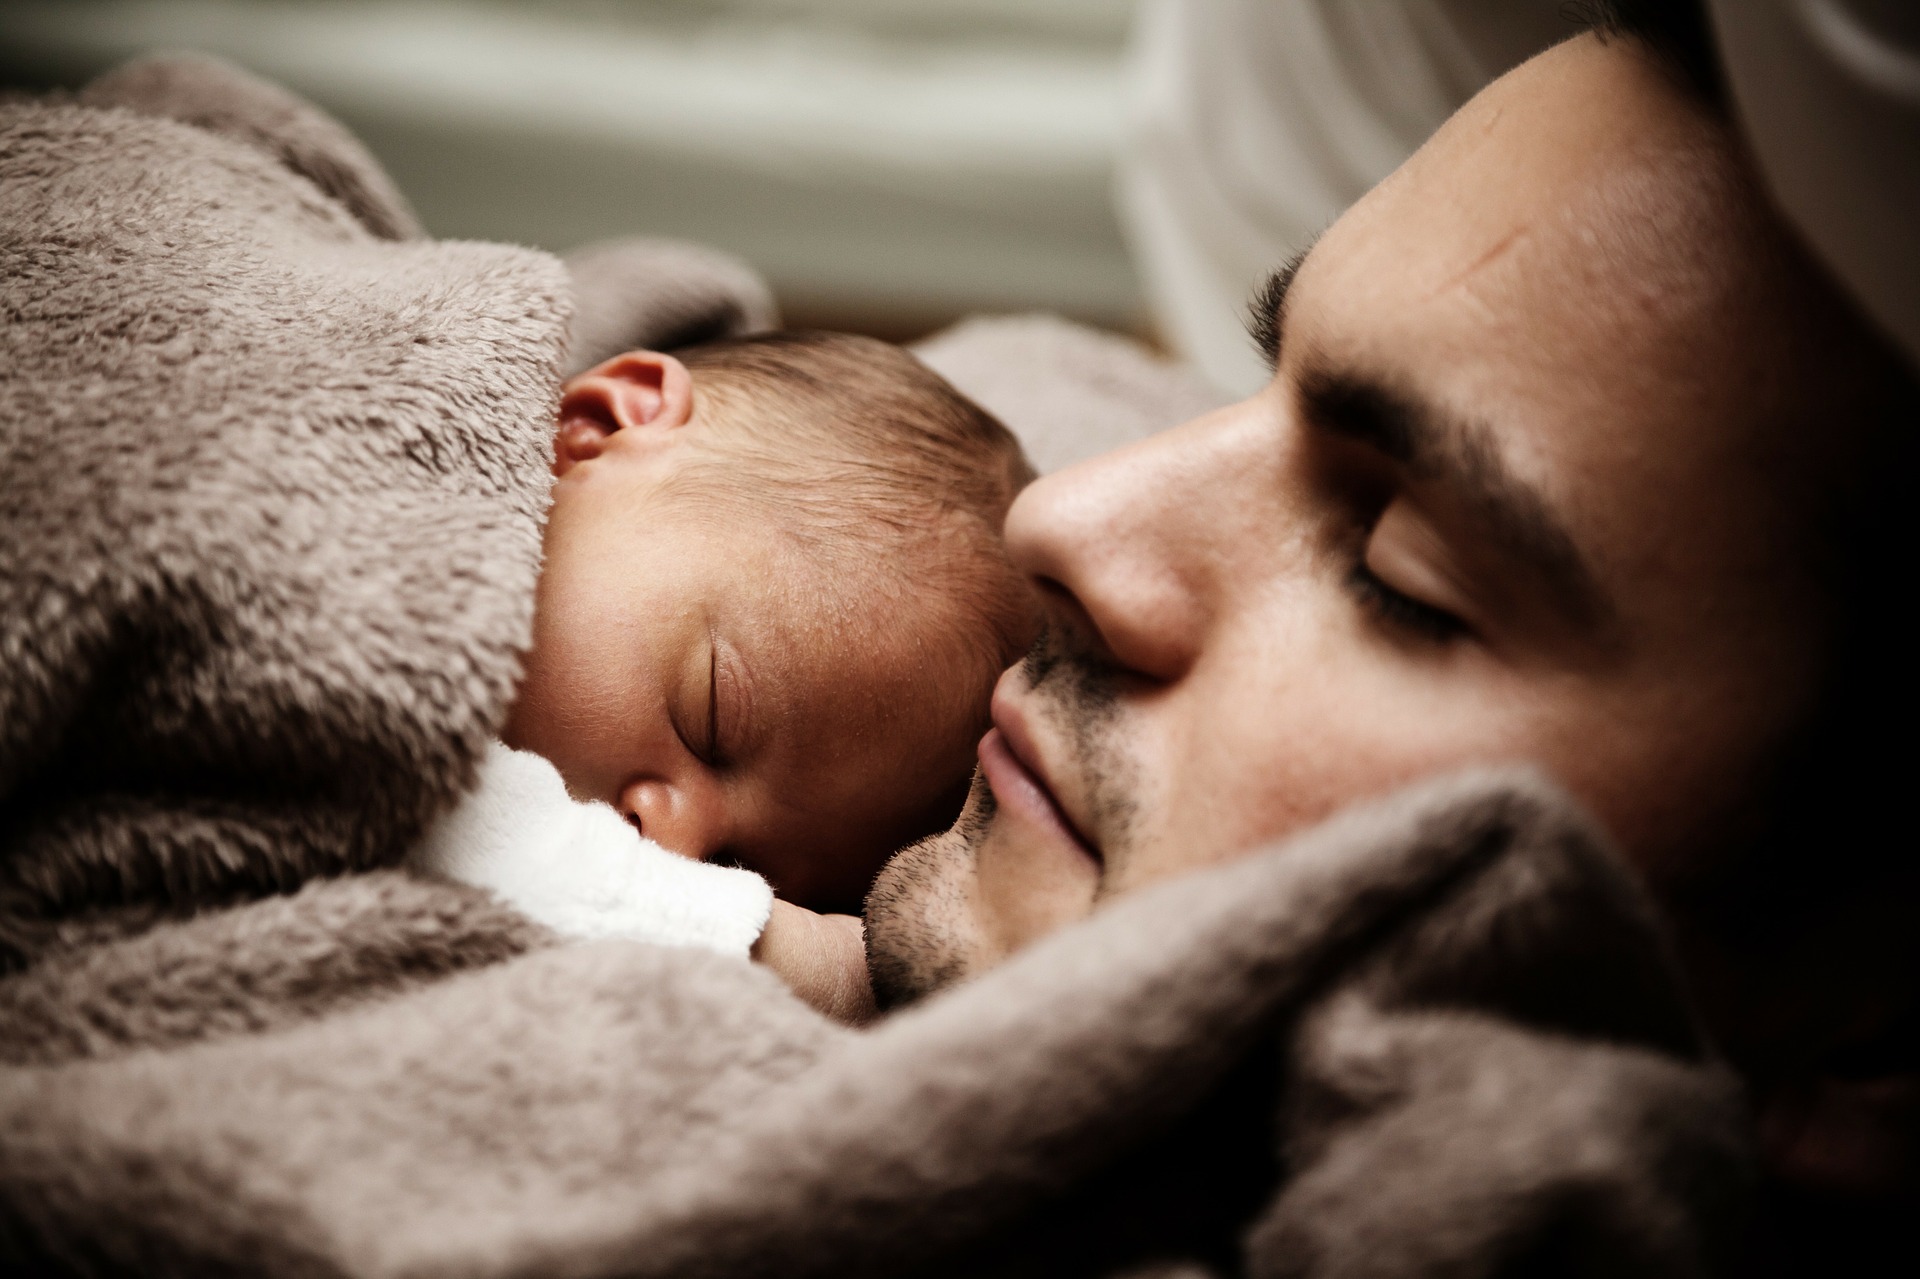 دراسة تقدم رؤية جديدة..رعاية الرضيع قد تترك بصمة في أدمغة الآباء الجدد